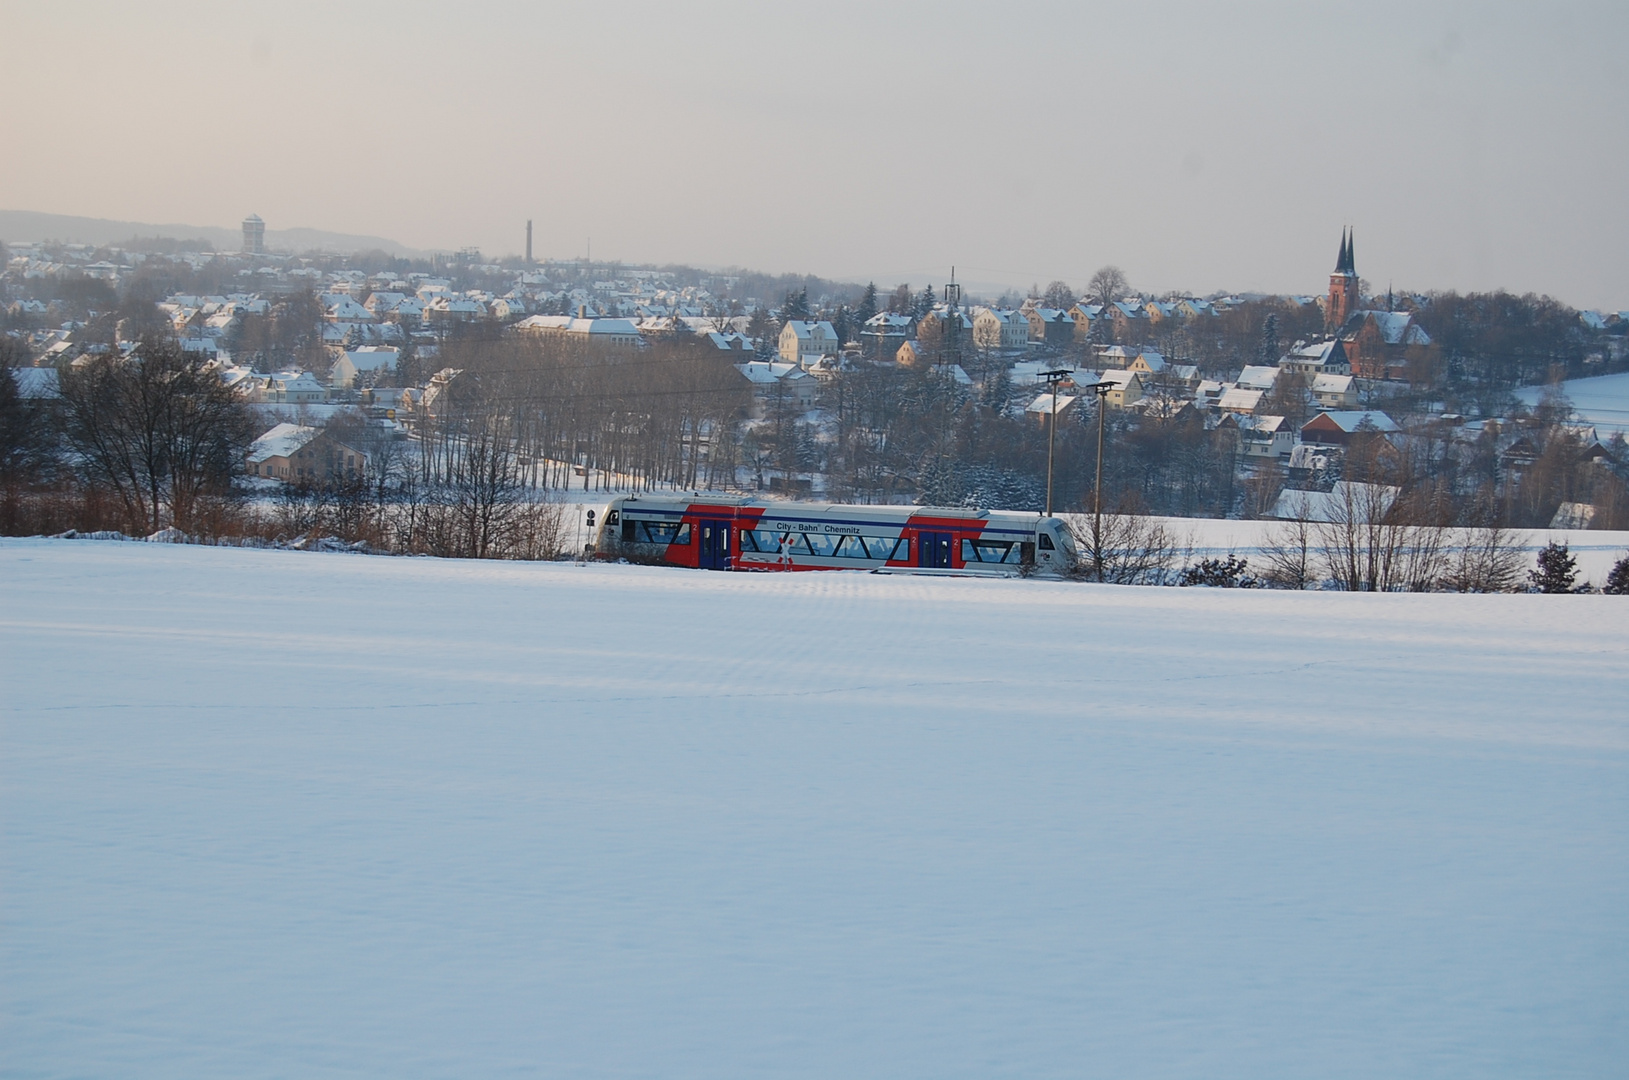 Regio-Shuttle der Citybahn Chemnitz GmbH mit Blick auf Niederwürschnitz